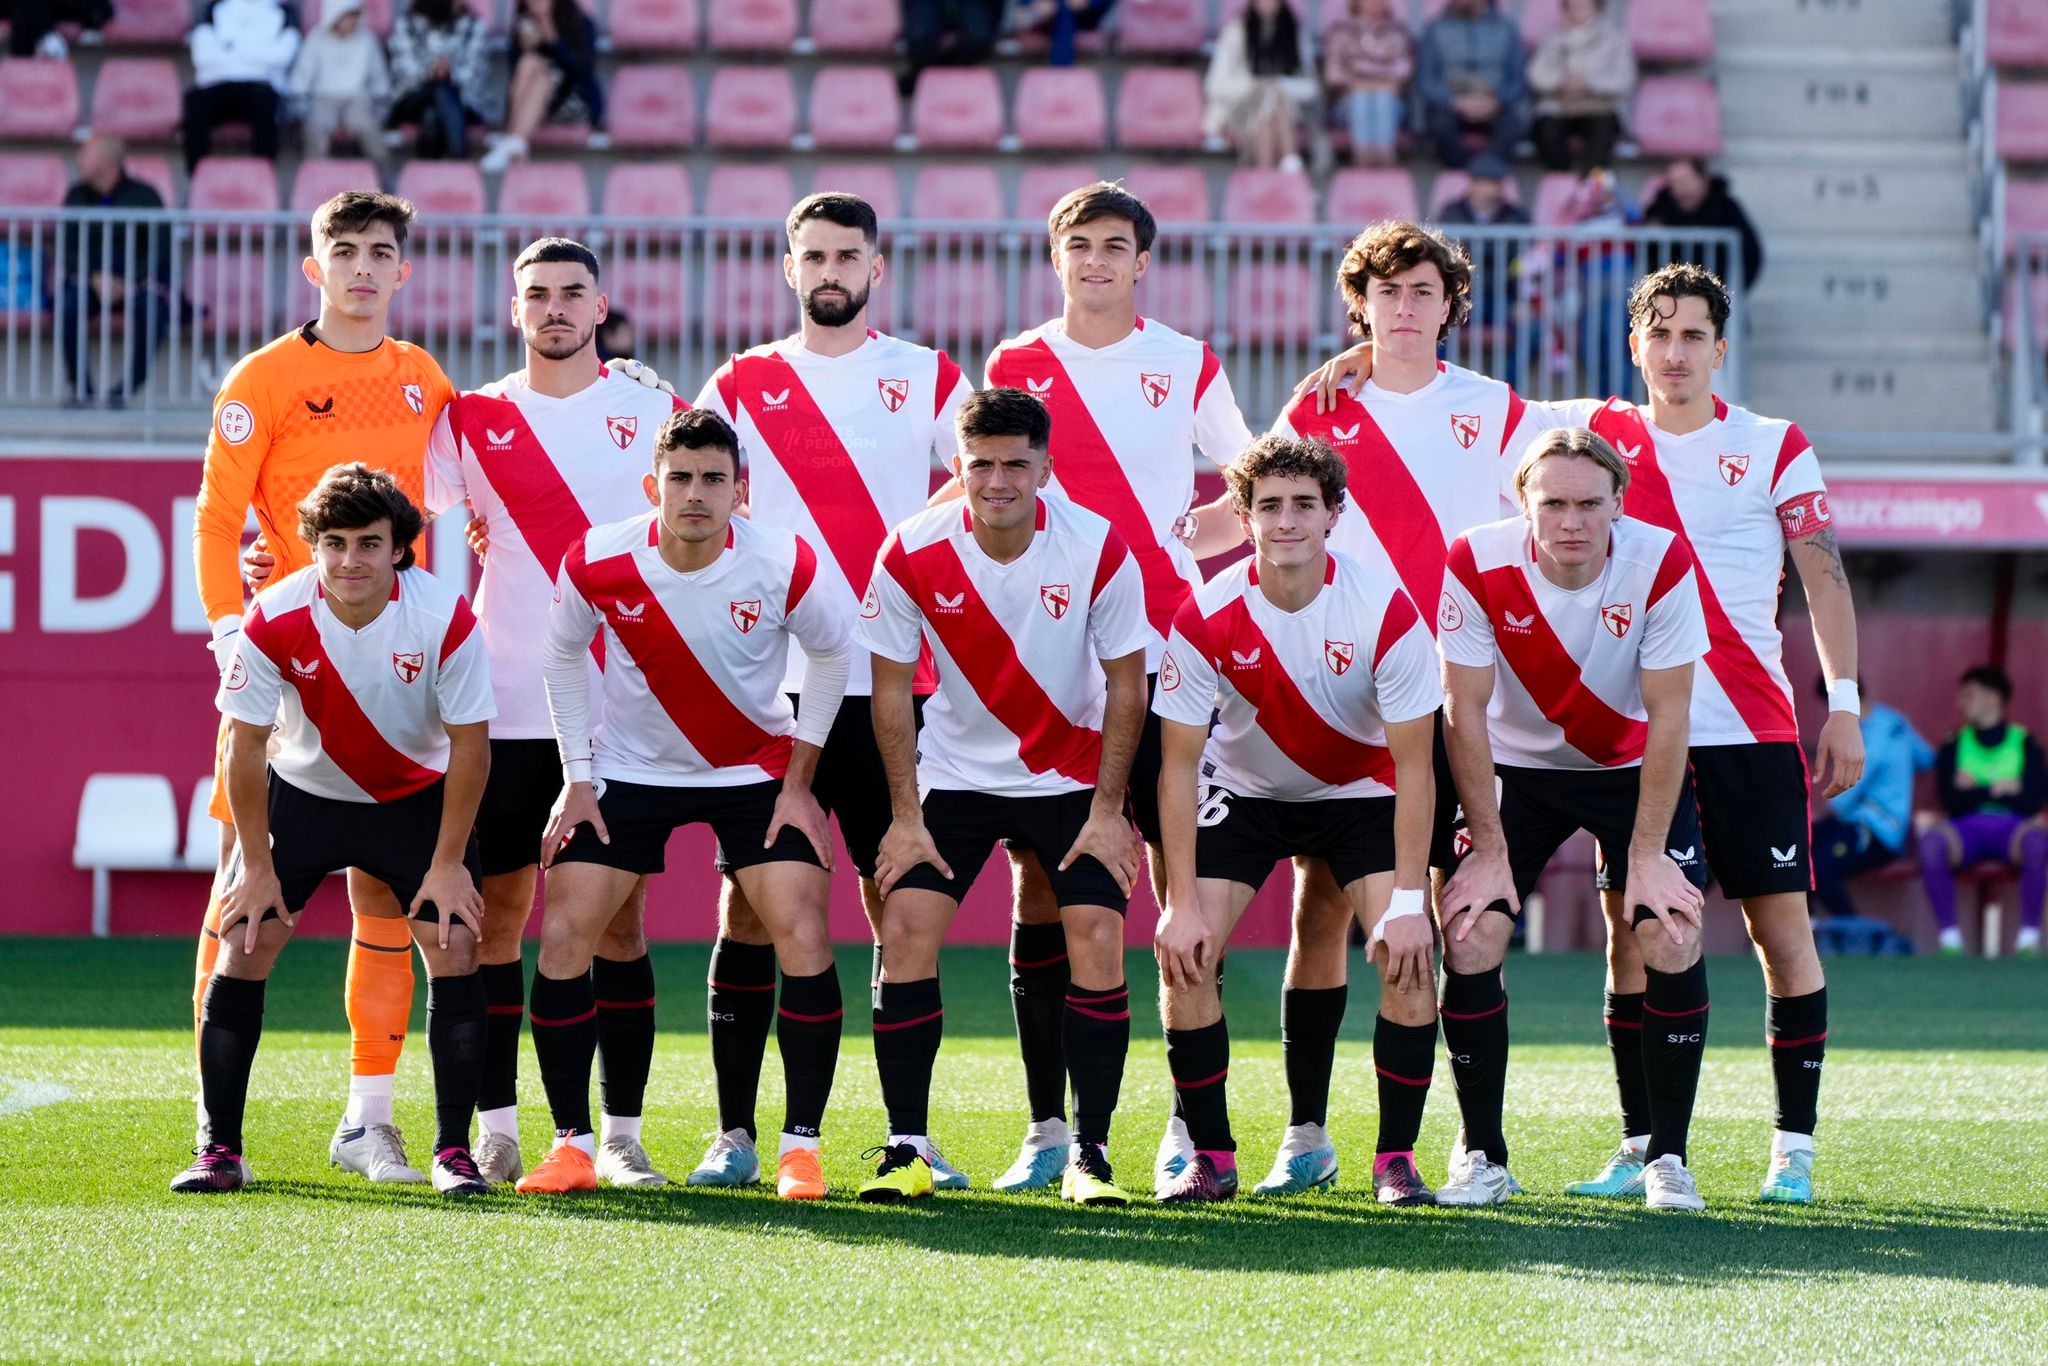 Sevilla Atlético starting XI